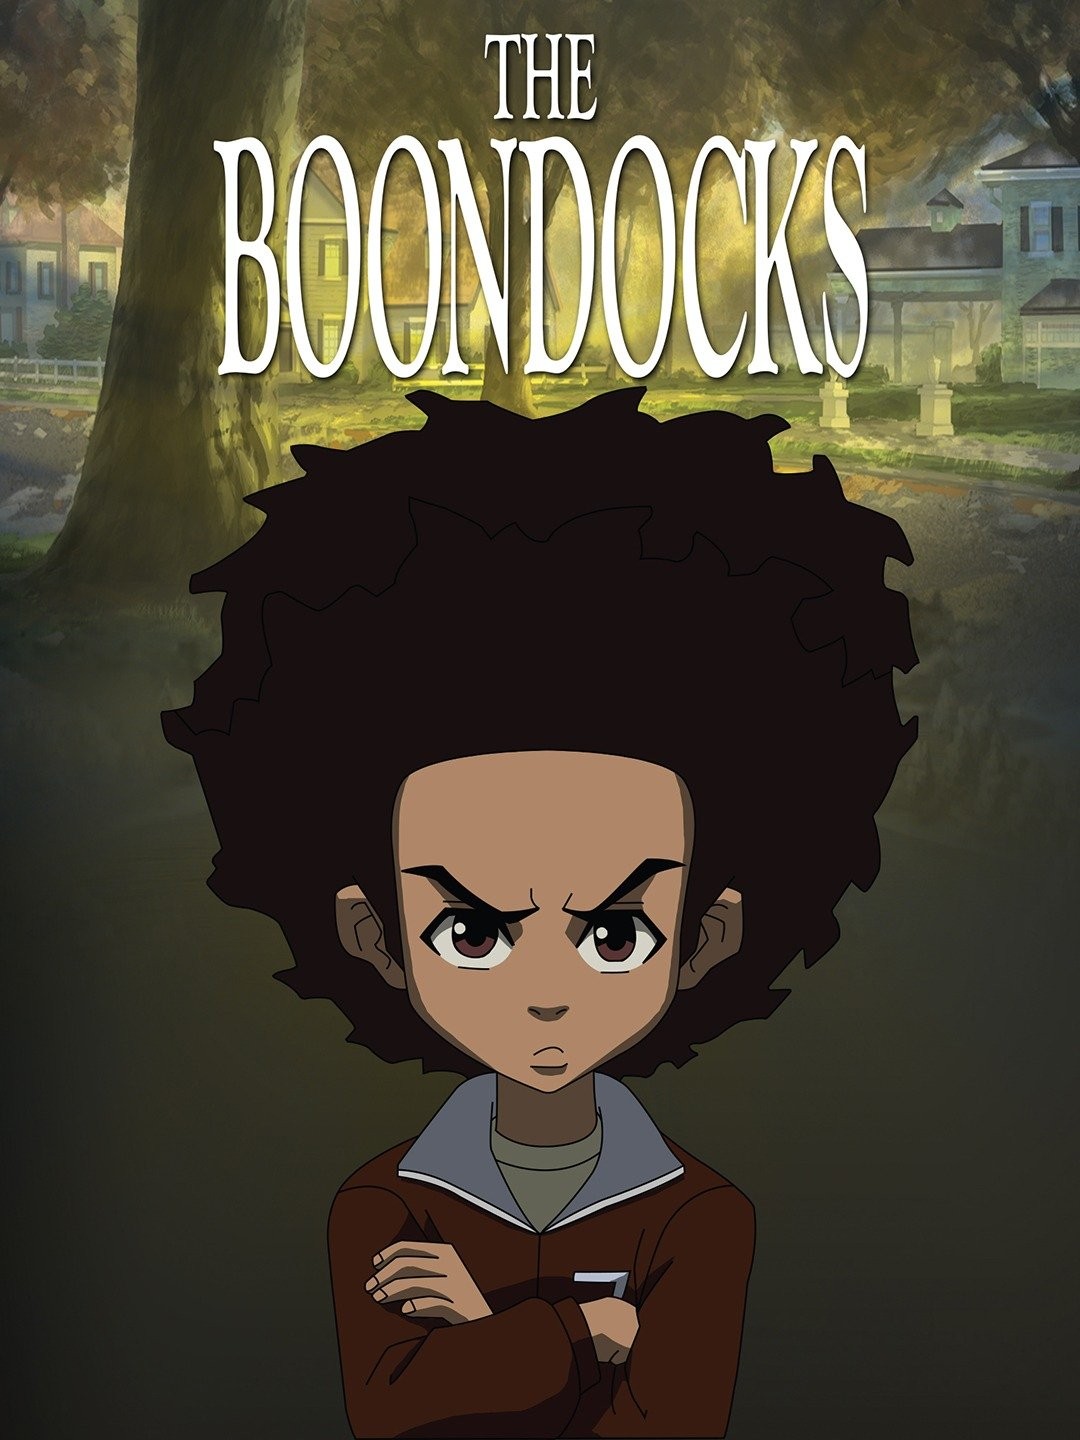 The Boondocks (TV Series 2005–2014) - IMDb